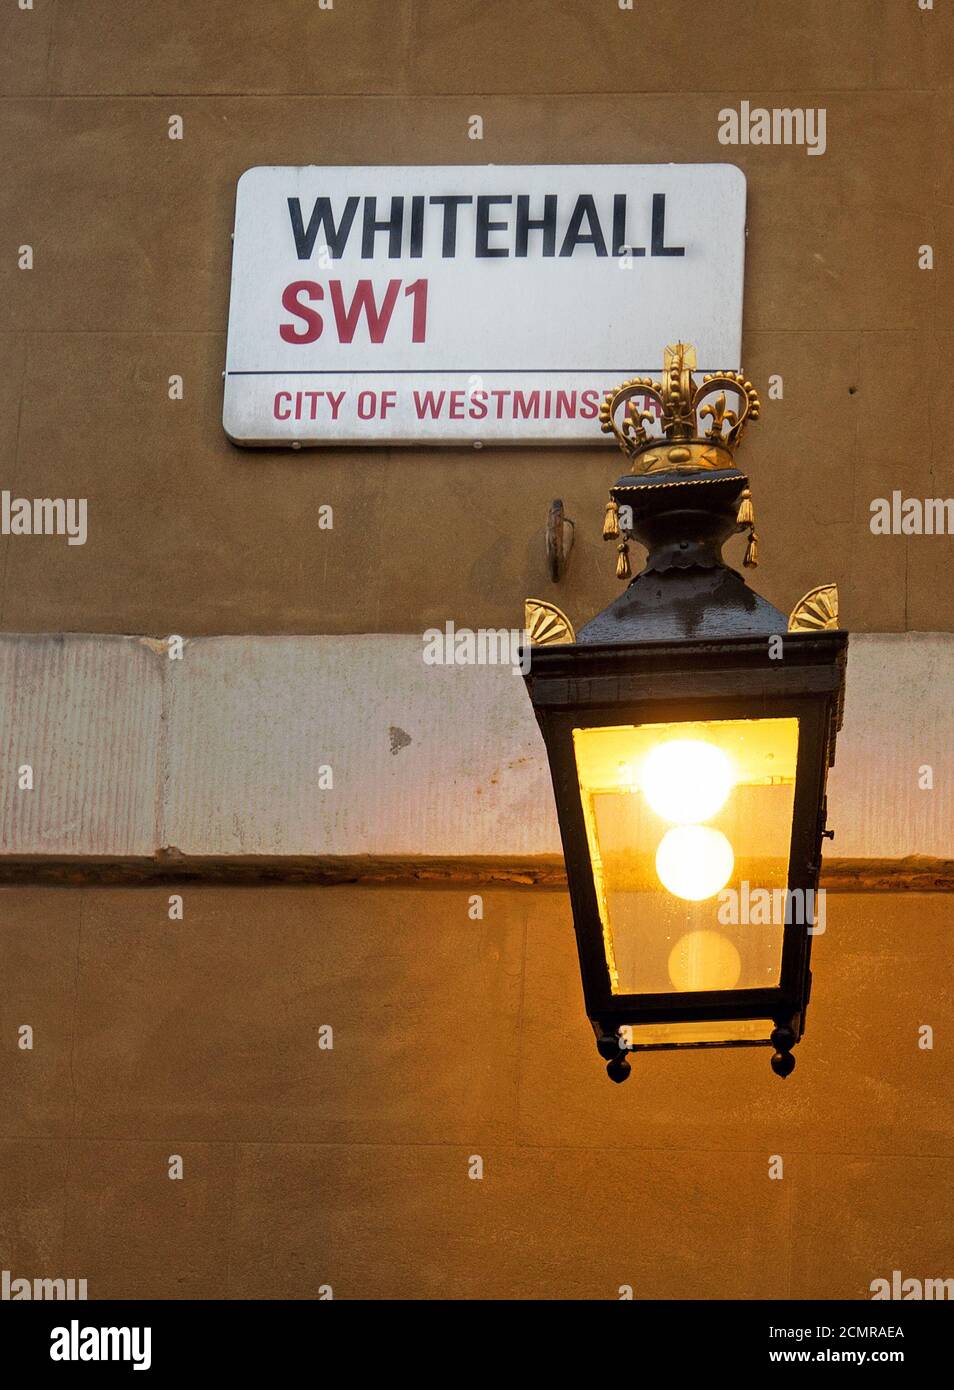 Whitehall Nombre placa con una linterna de vela a la antigua luz. La calle es reconocida como el centro del Gobierno del Reino Unido Foto de stock